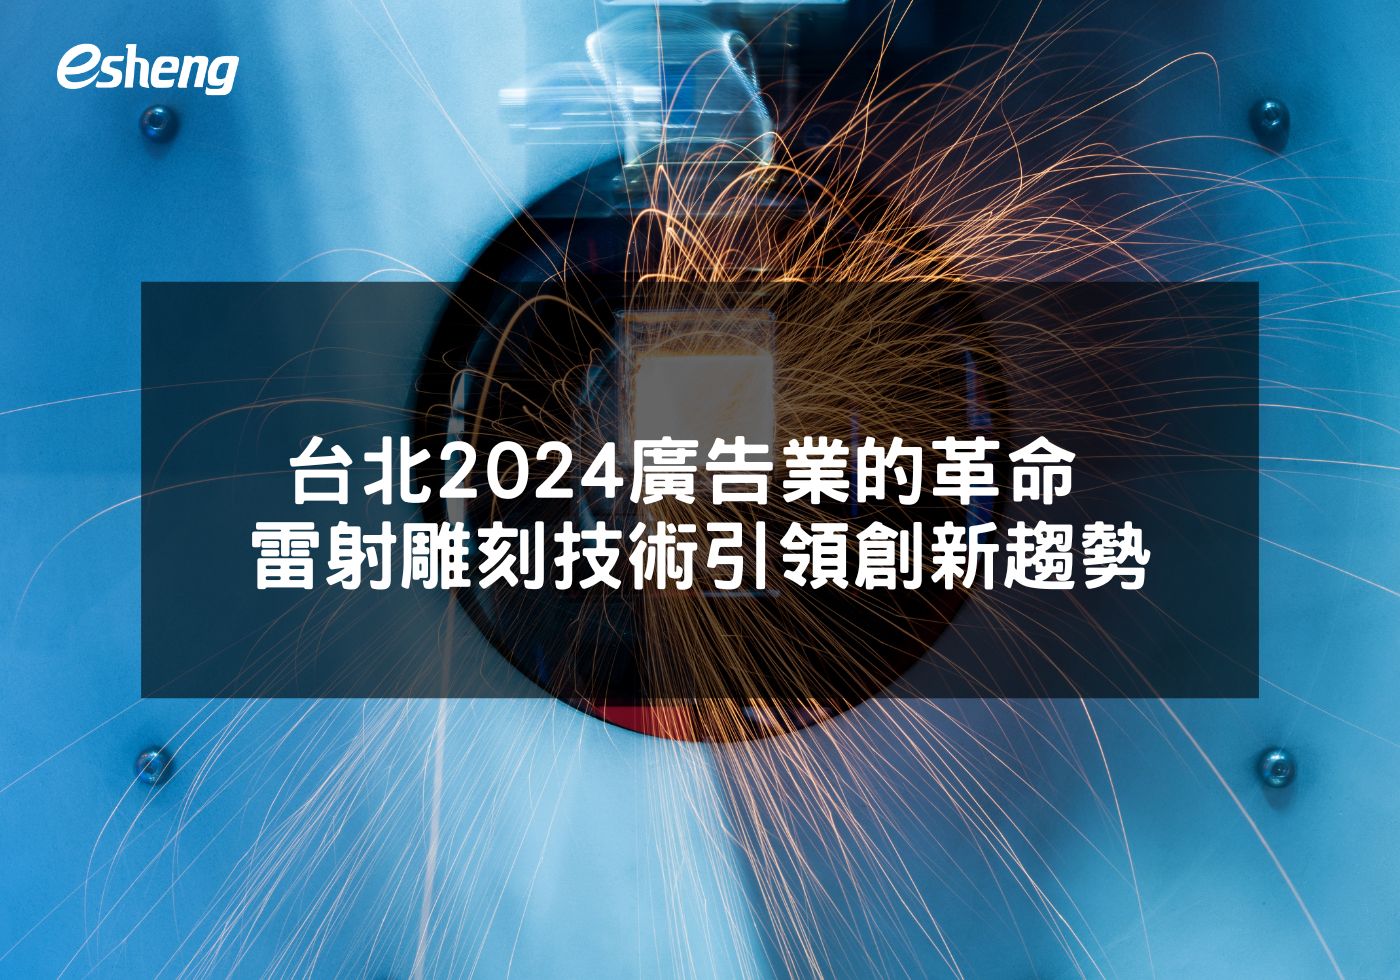 台北2024廣告業的革命 雷射雕刻技術引領創新趨勢